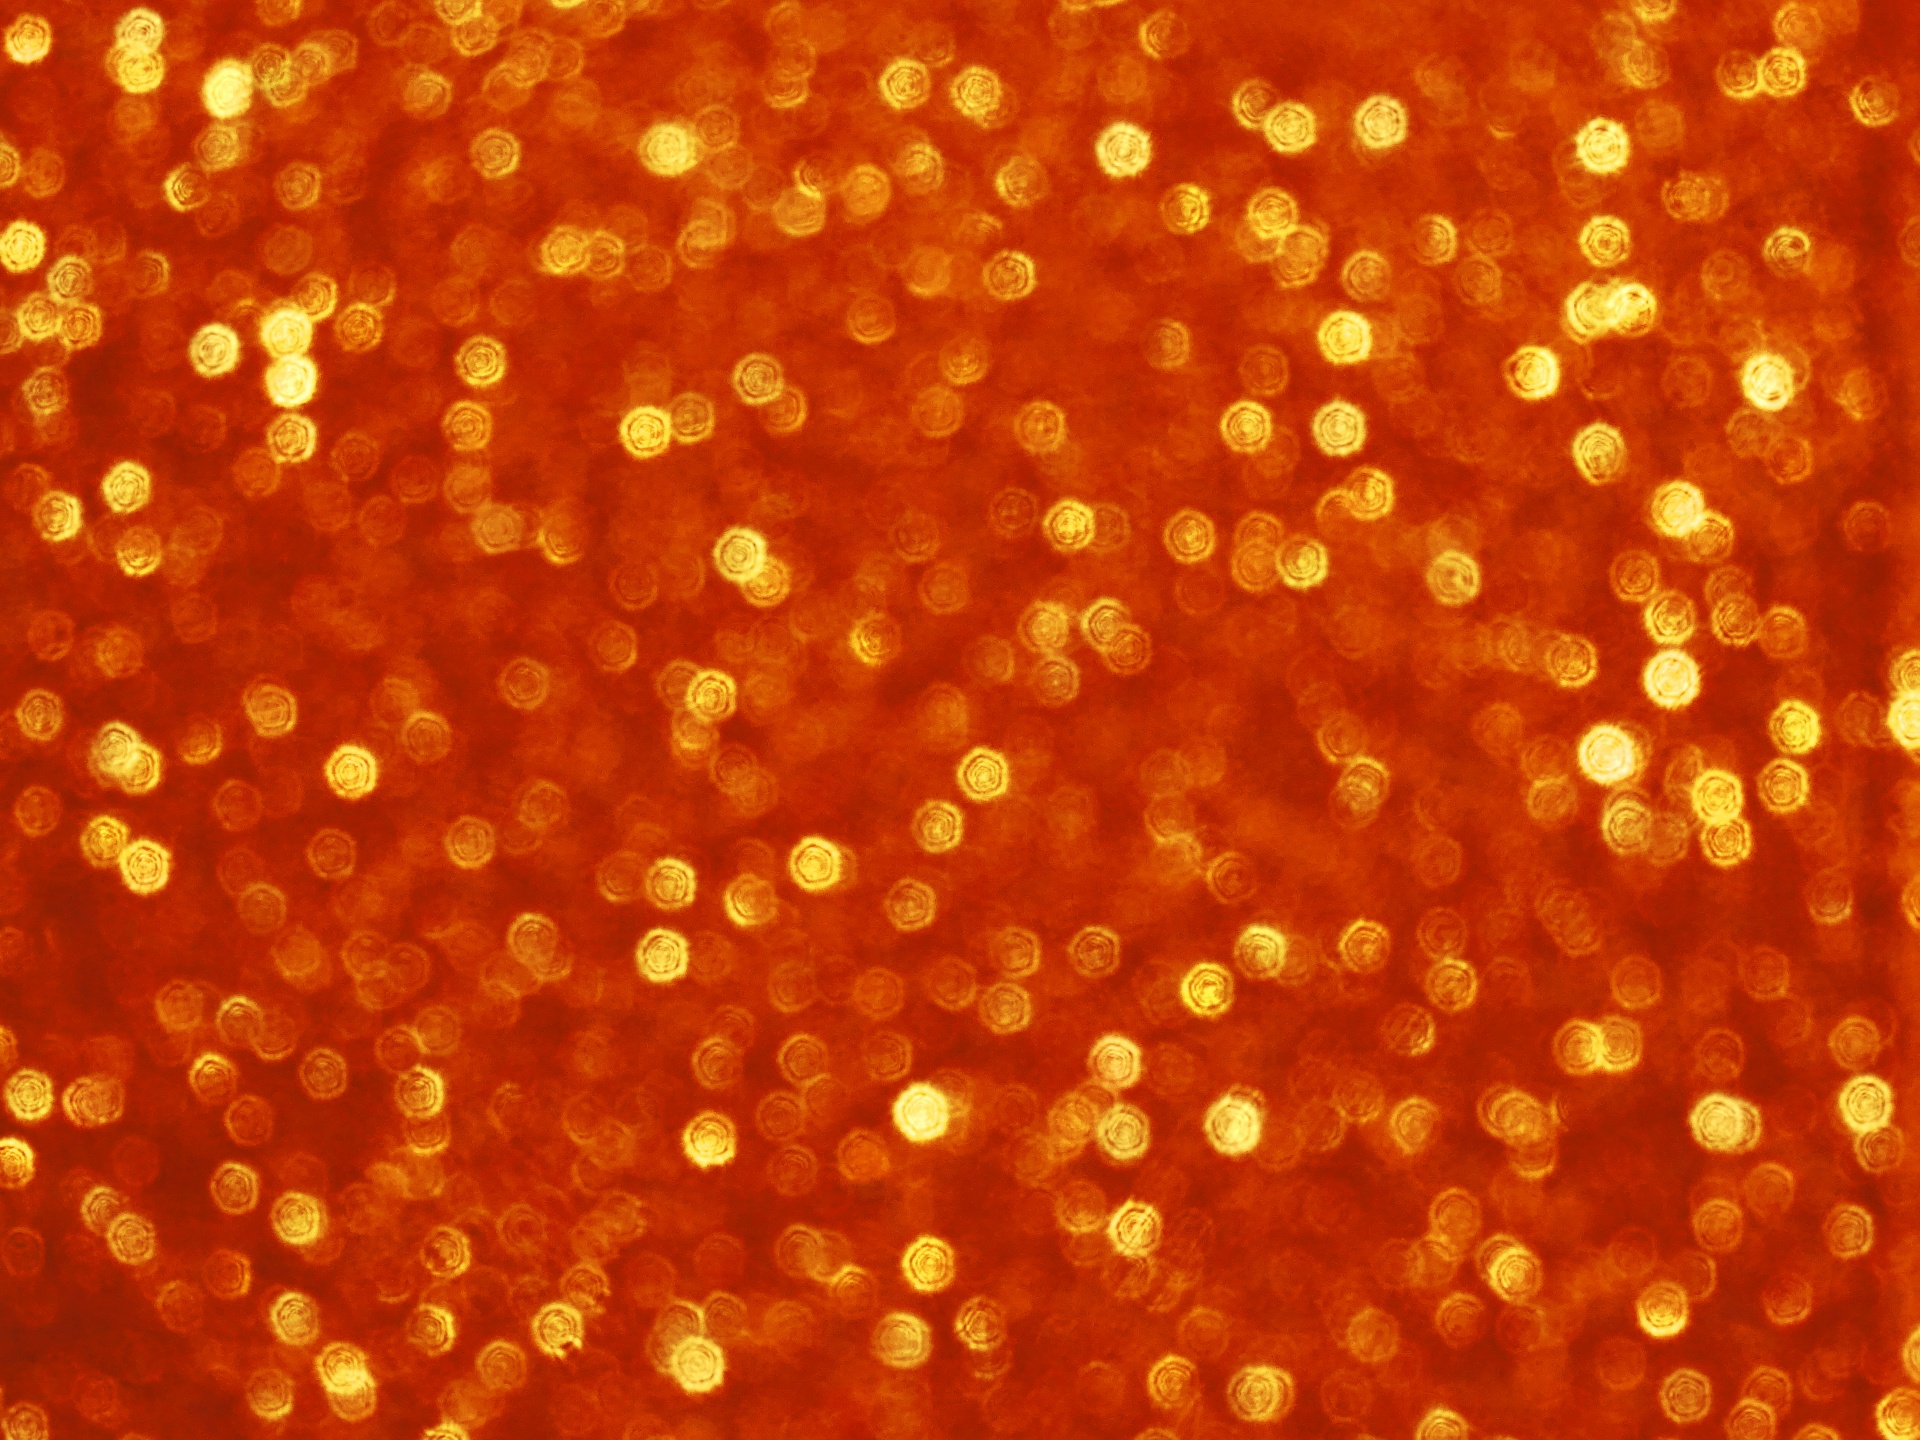 orange backgrounds sparkle free photo